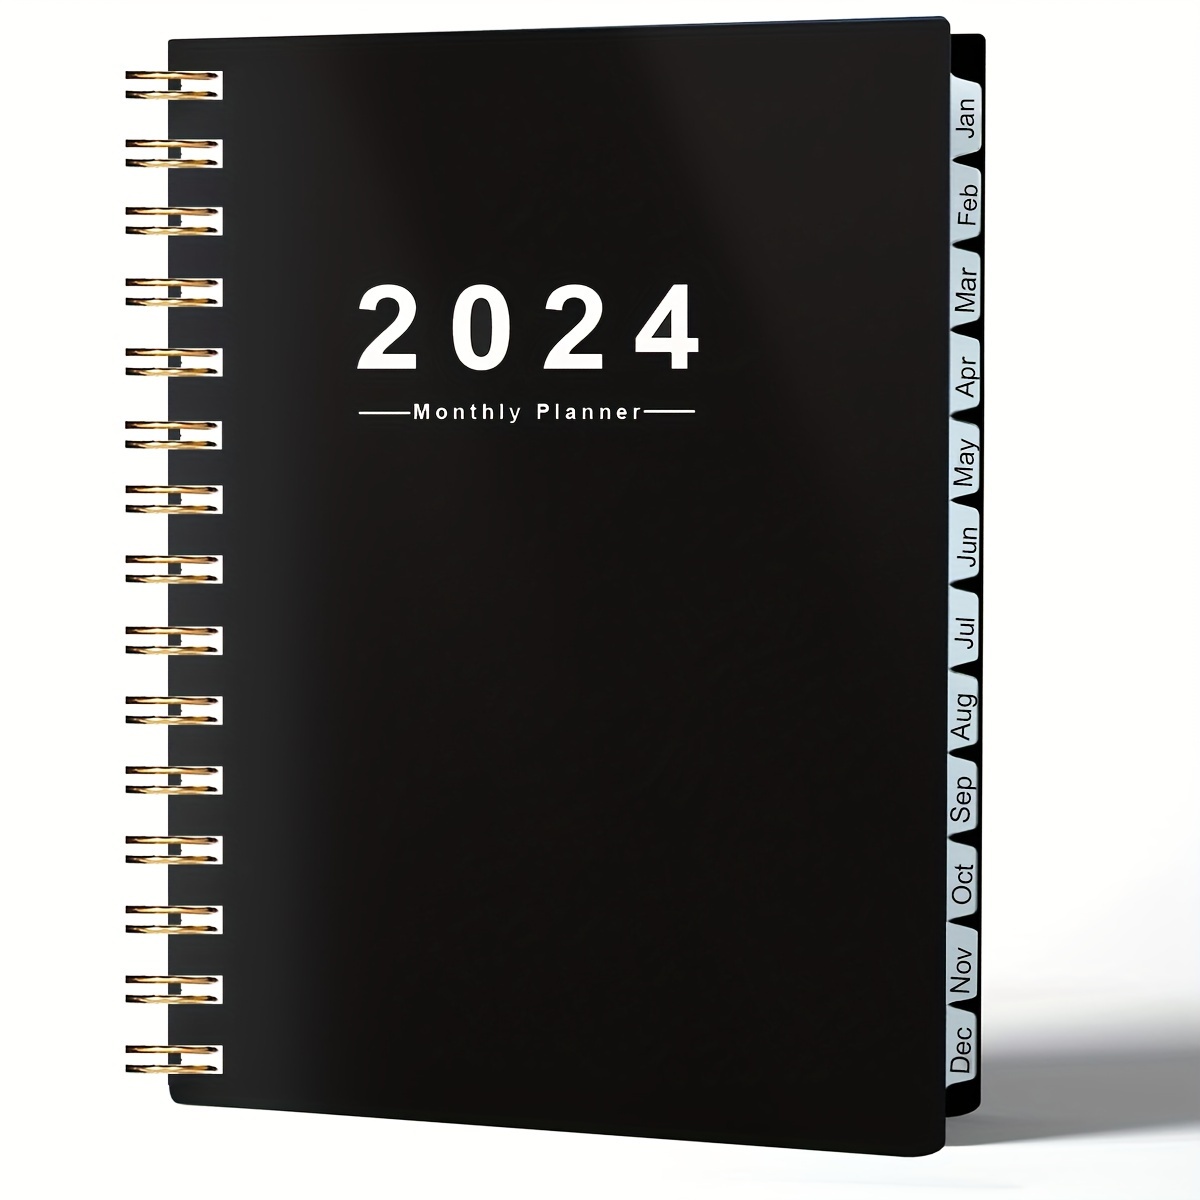 Planificateur 2024 avec autocollants, couverture rigide, planificateur  journalier 2024 avec onglets, planificateur hebdomadaire mensuel à double